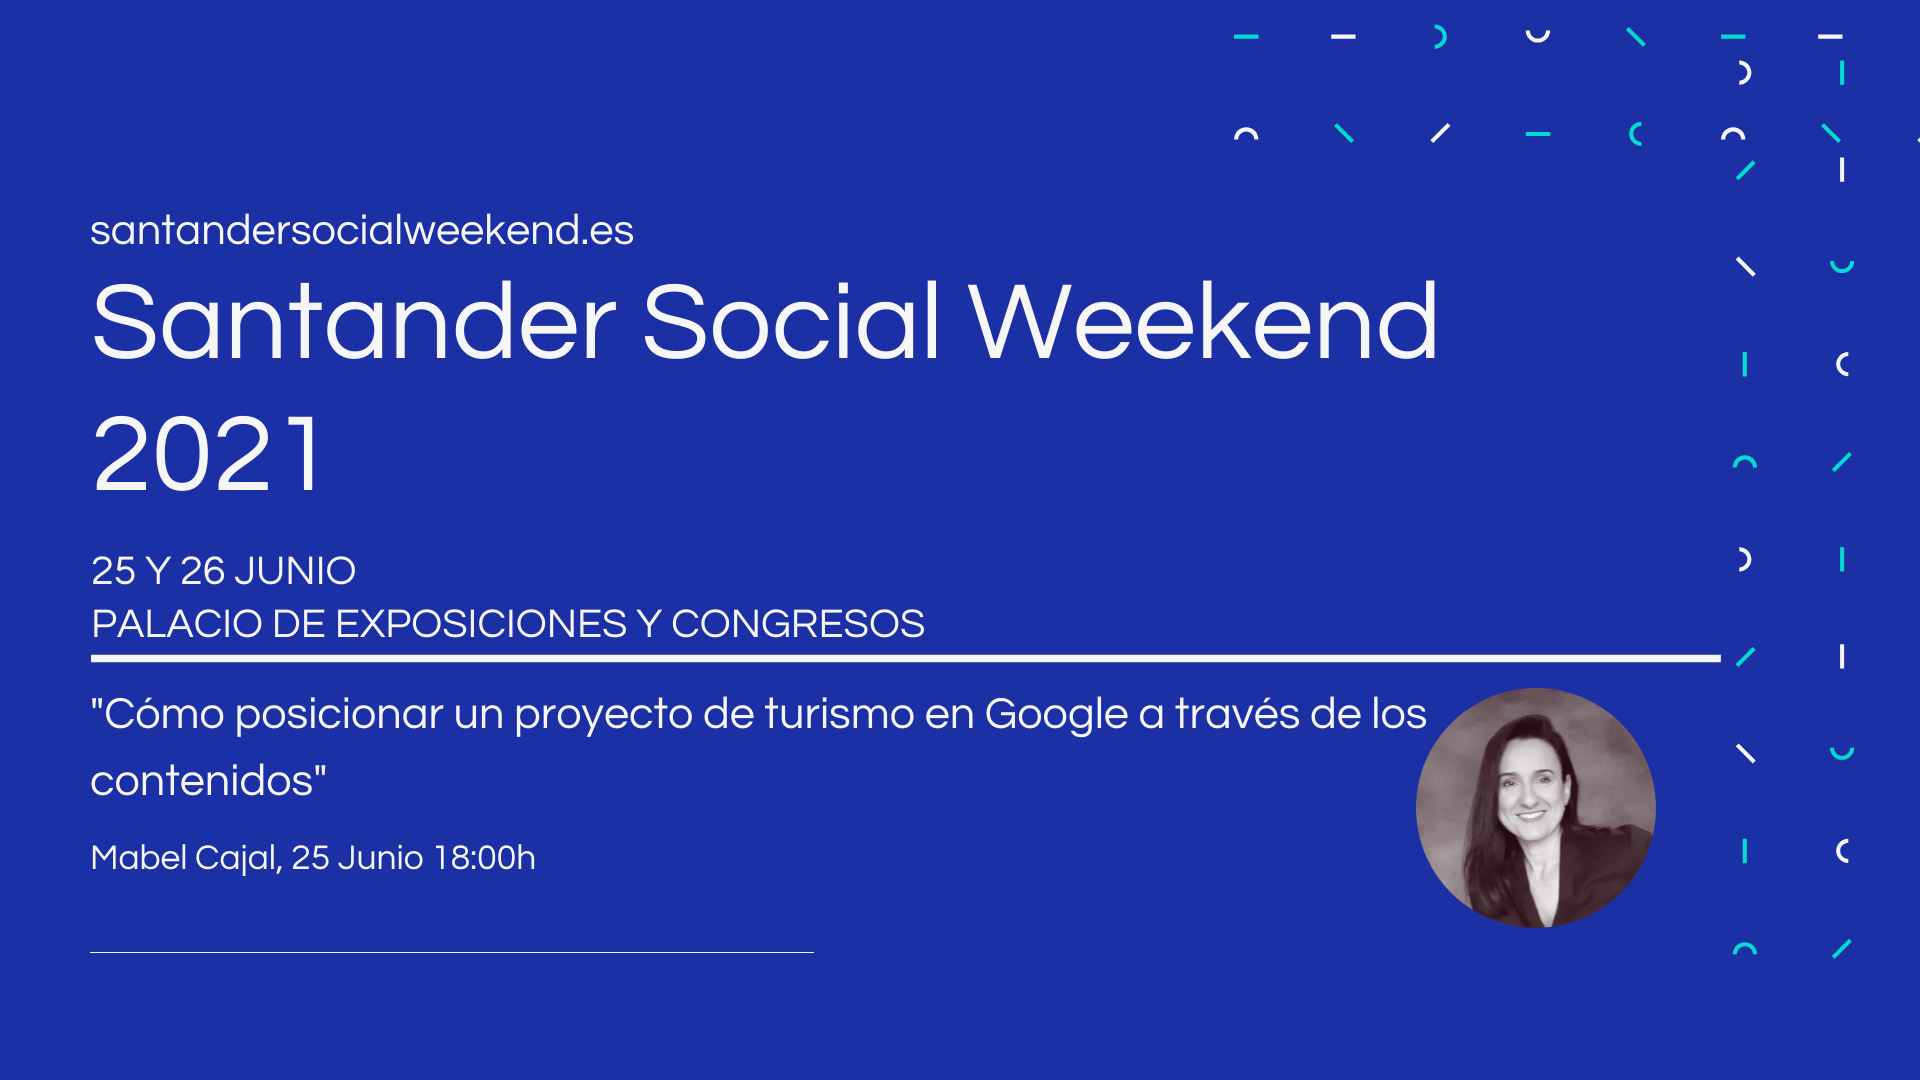 Santander Social Weekend 2021 (25 y 26 Junio) presencial y online ¿Nos vemos?